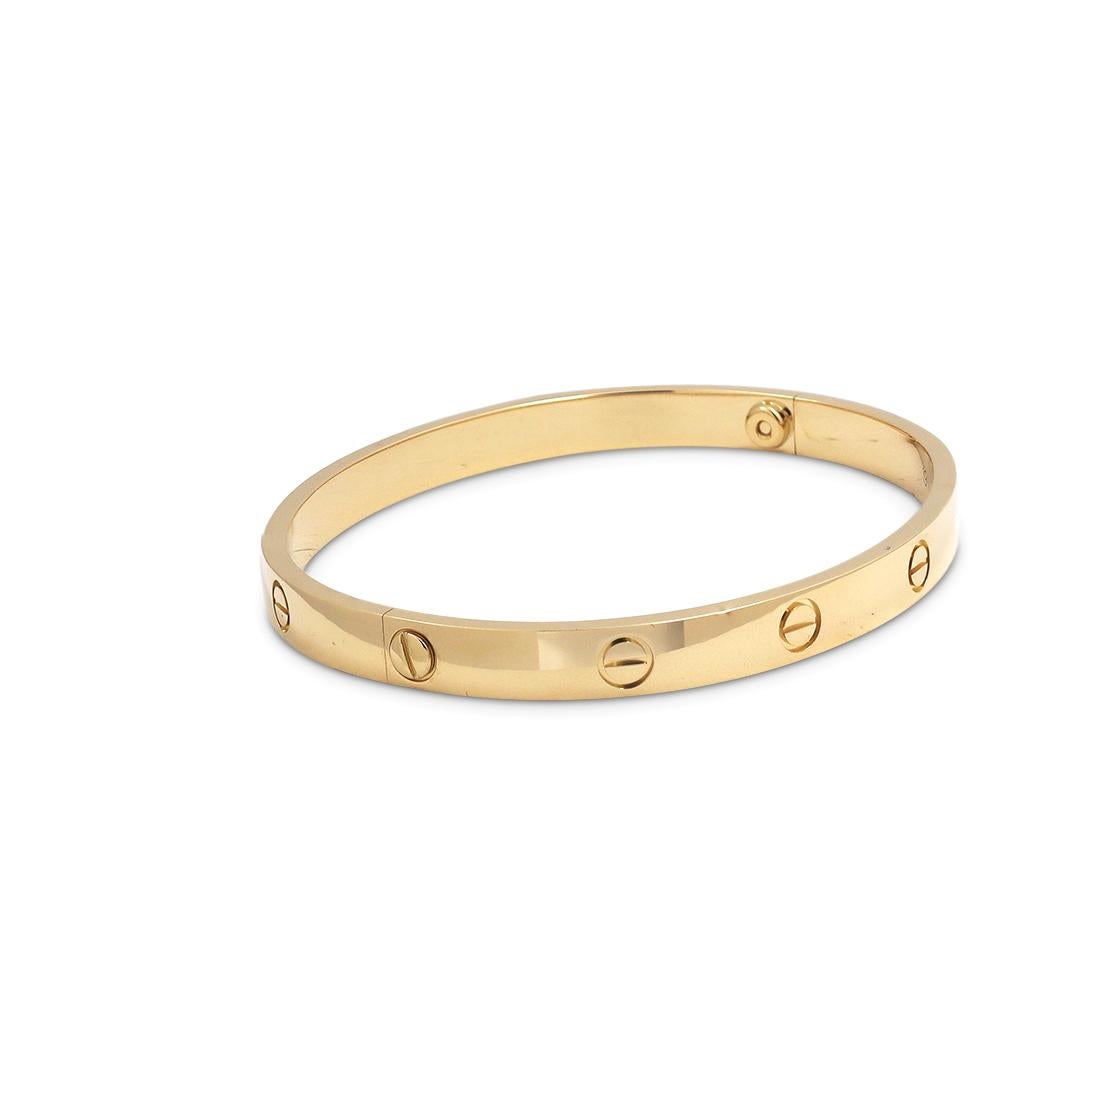 yellow gold cartier love bracelet